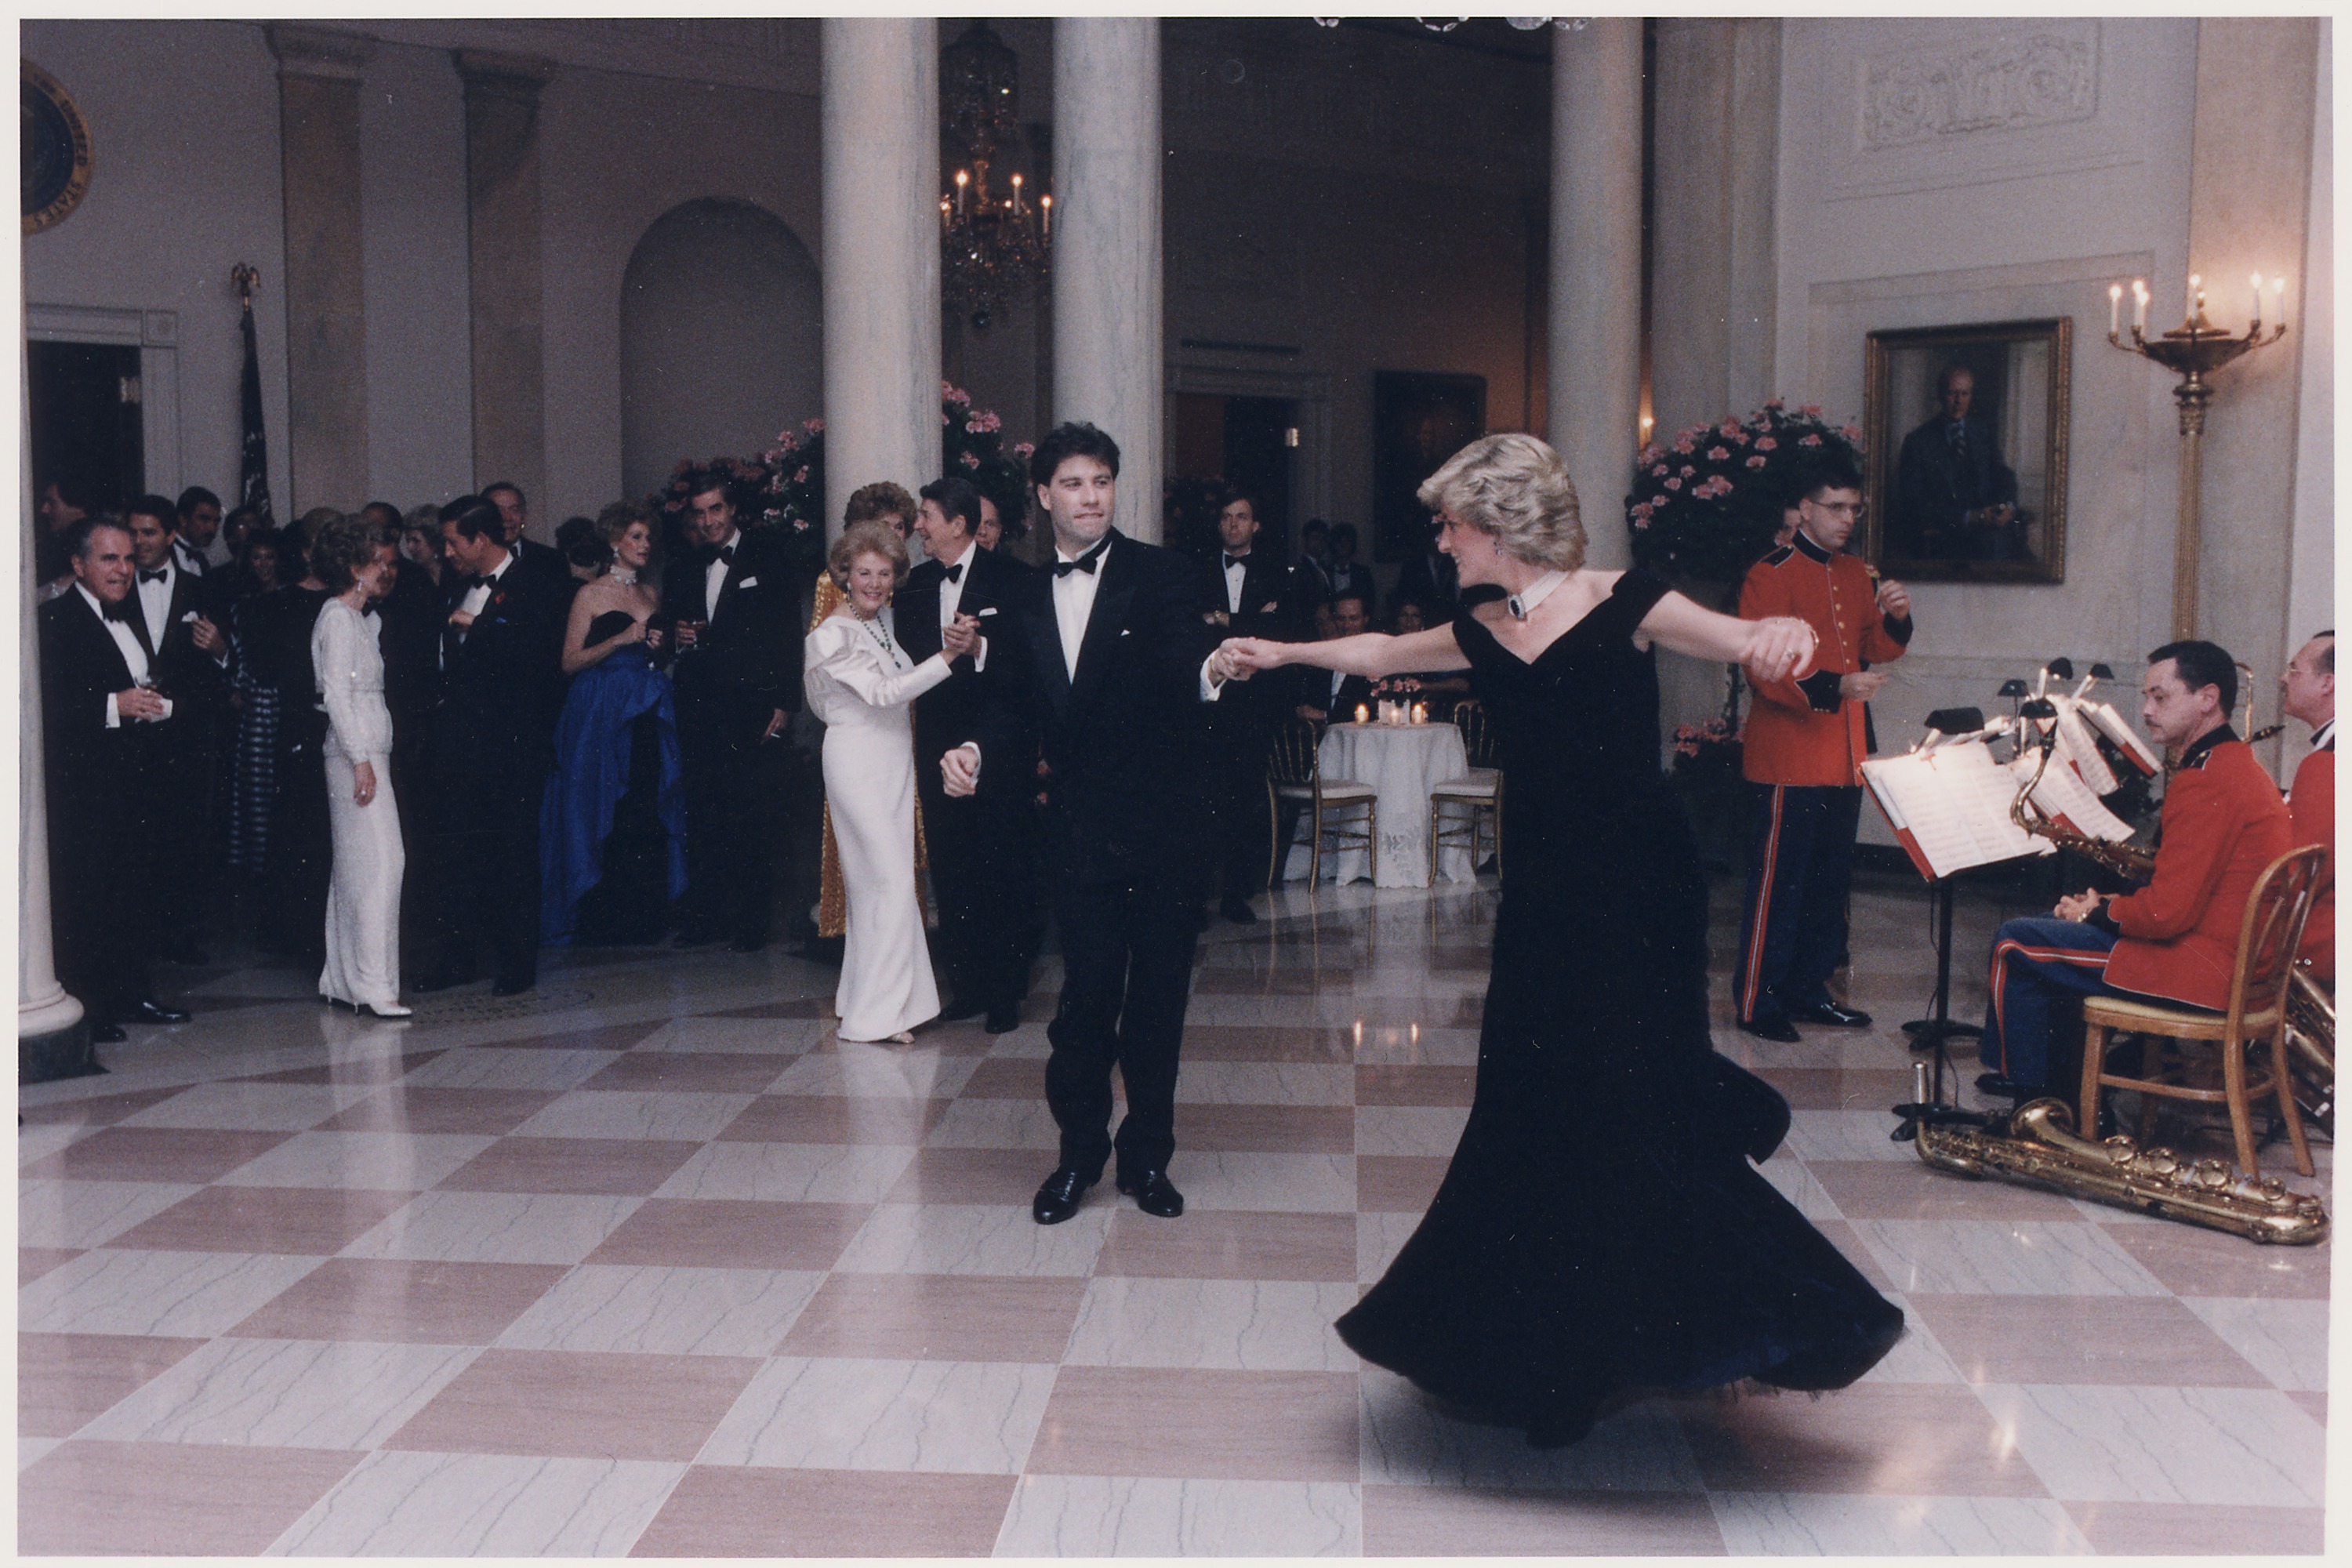 File:Photograph of Princess Diana dancing with John Travolta at a ...